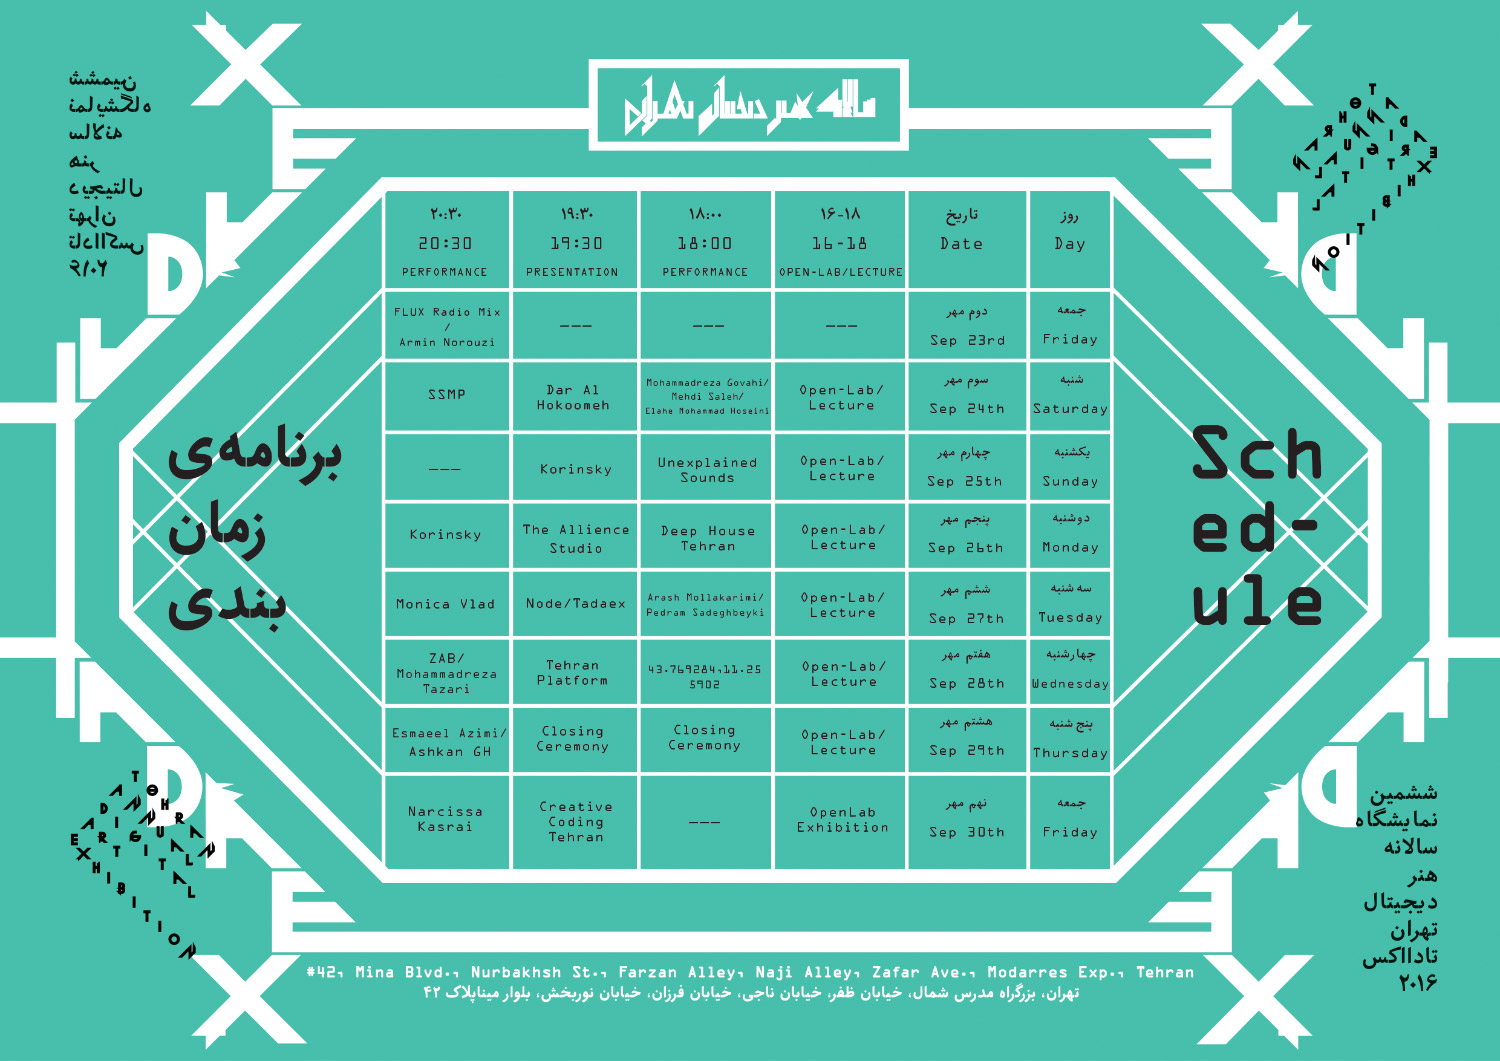 TADAEX2016 schedule